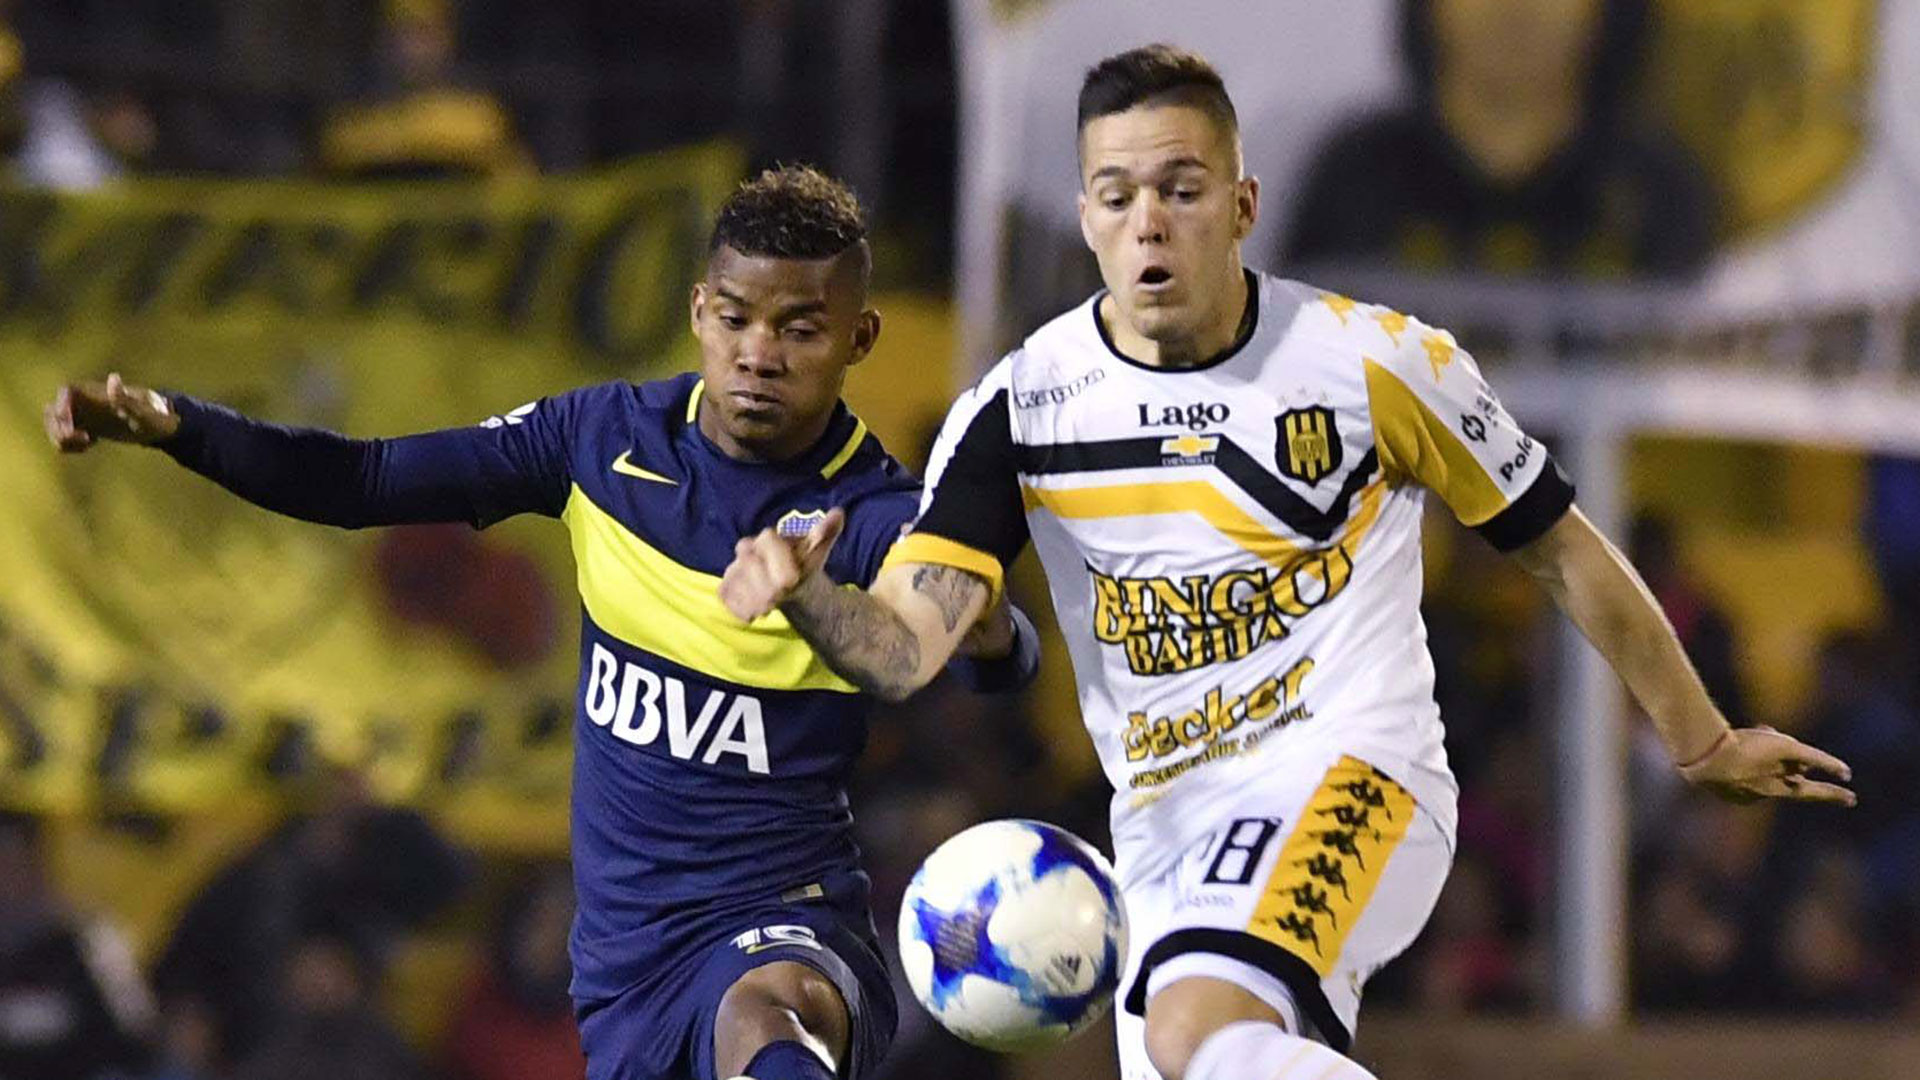 Boca y Olimpo chocan en Chaco, por 32avos de Copa Argentina | Canal Showsport